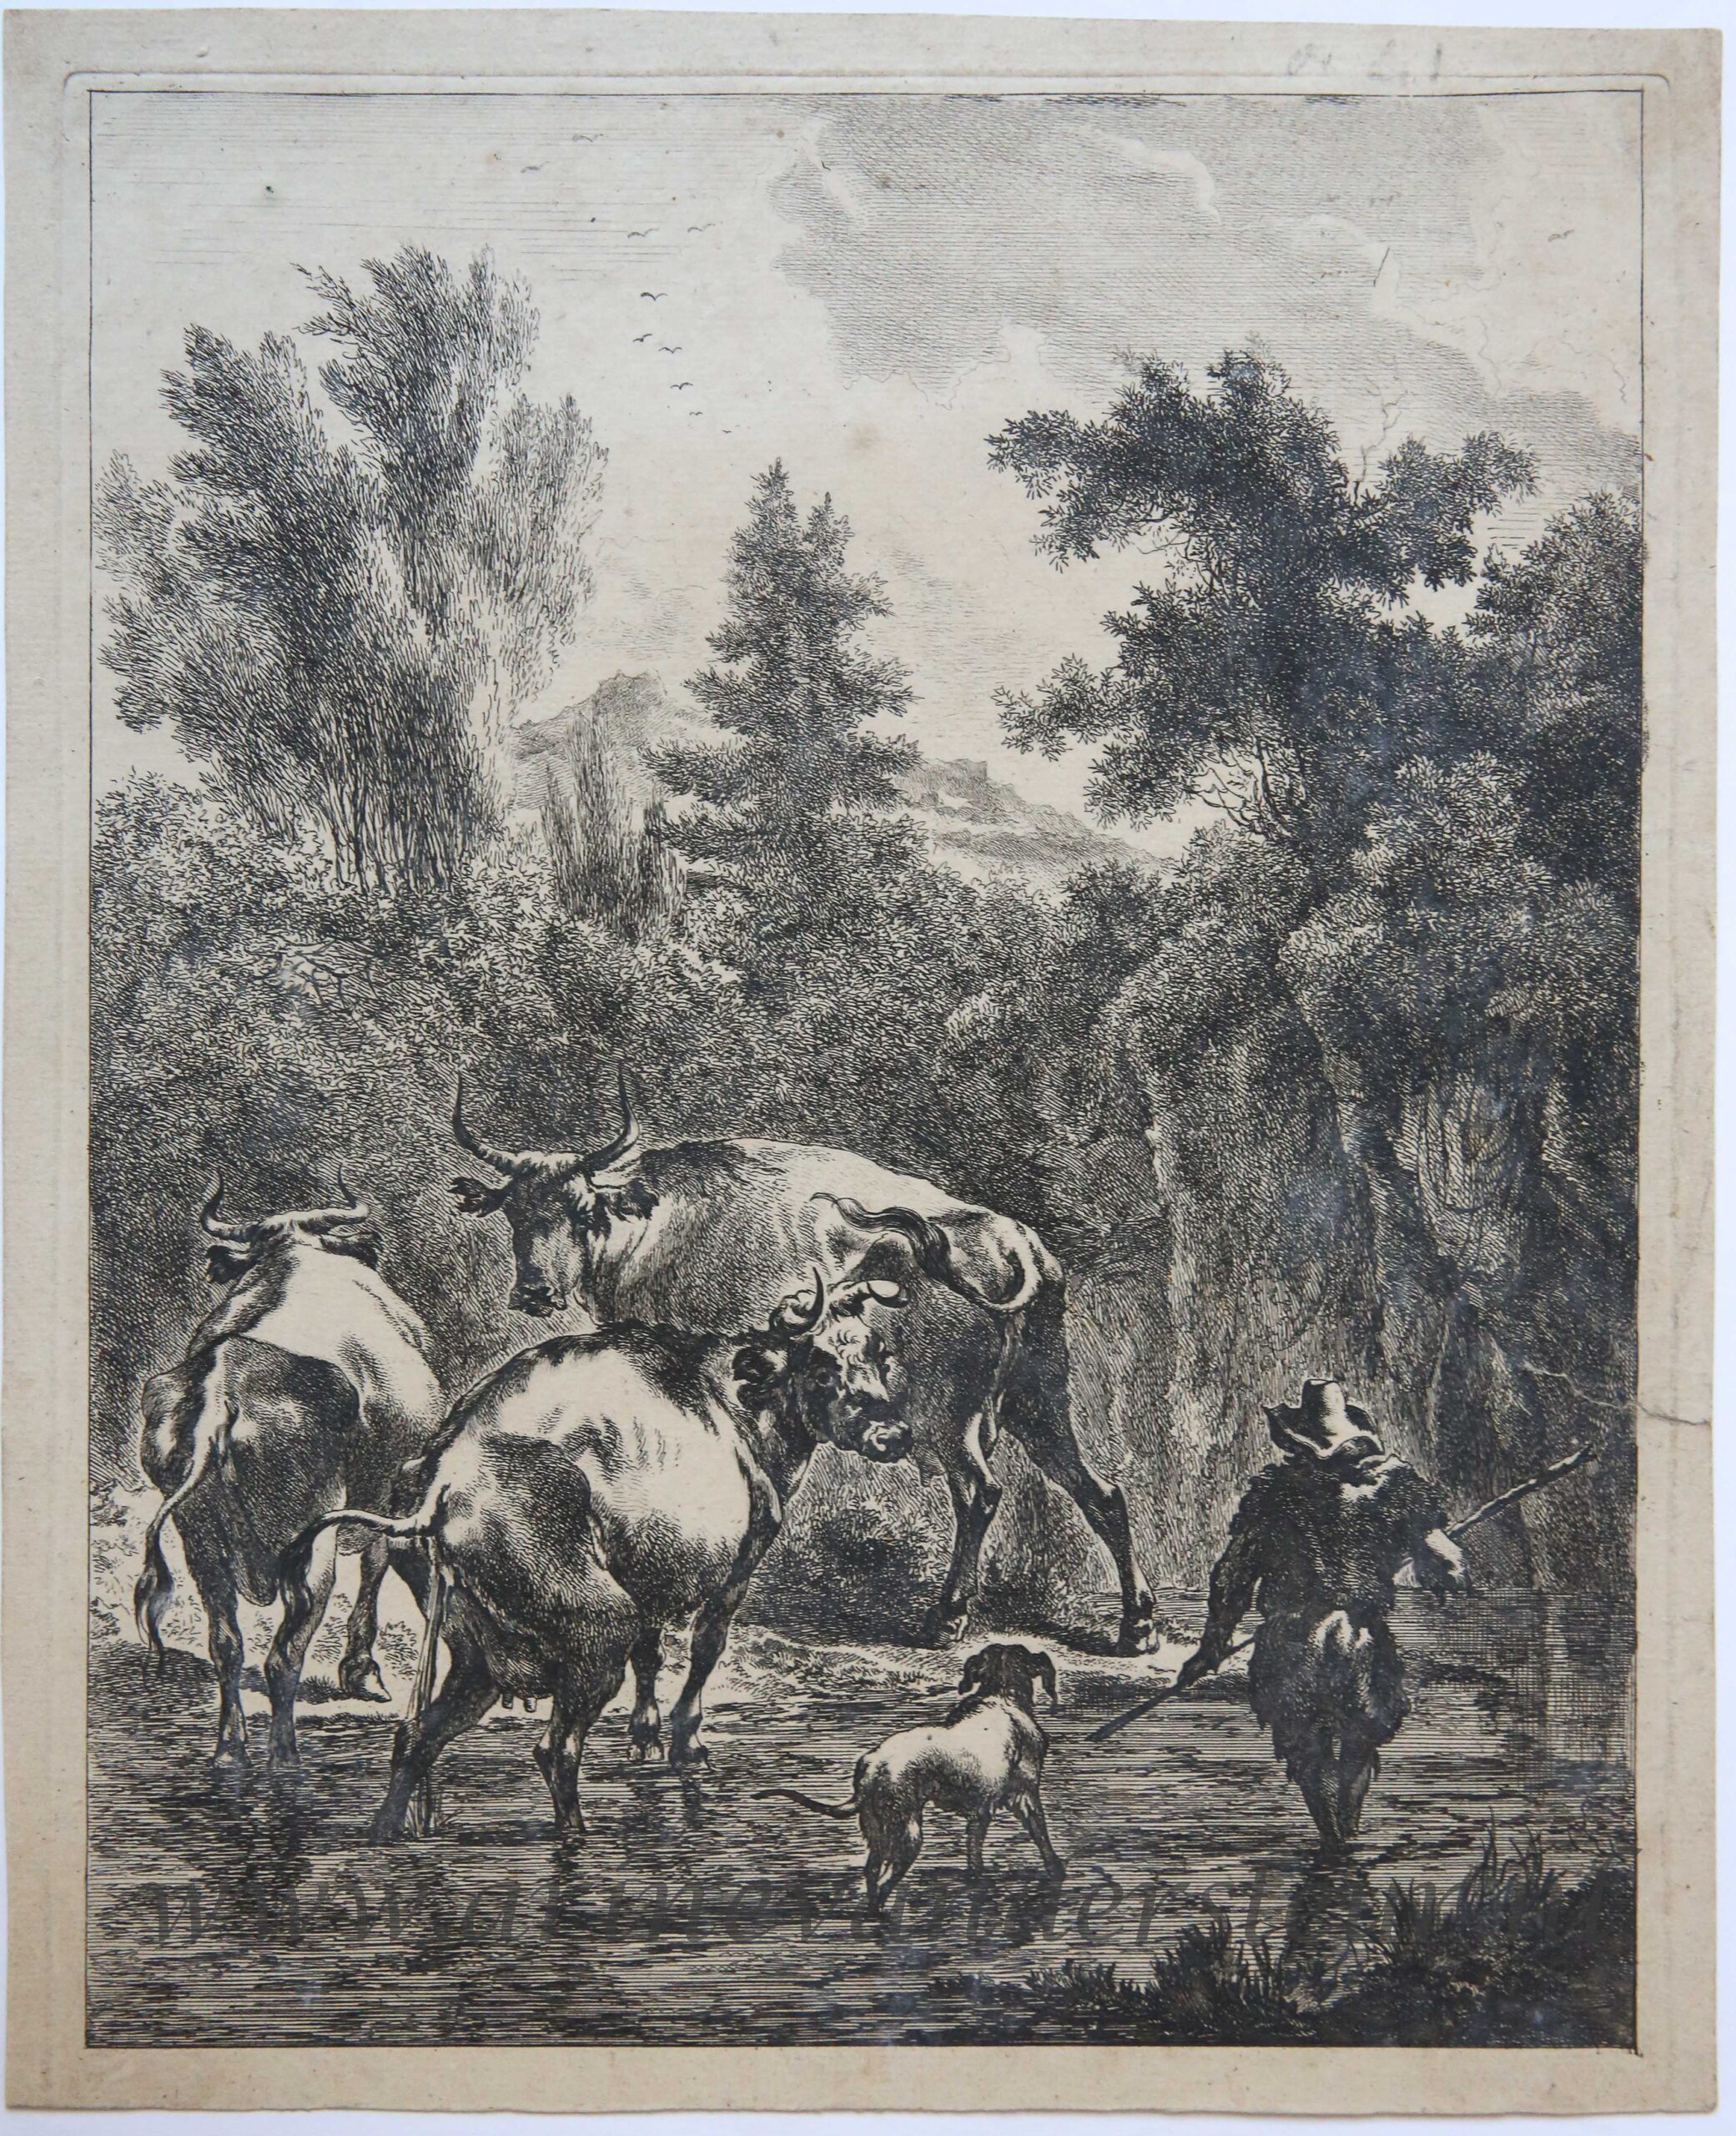 [Antique print, etching] Herd, dog and three cows crossing a ford/ Kudde schapen, hond en drie koeien die een doorwaadbare plaats oversteken, ca 1650-1700.